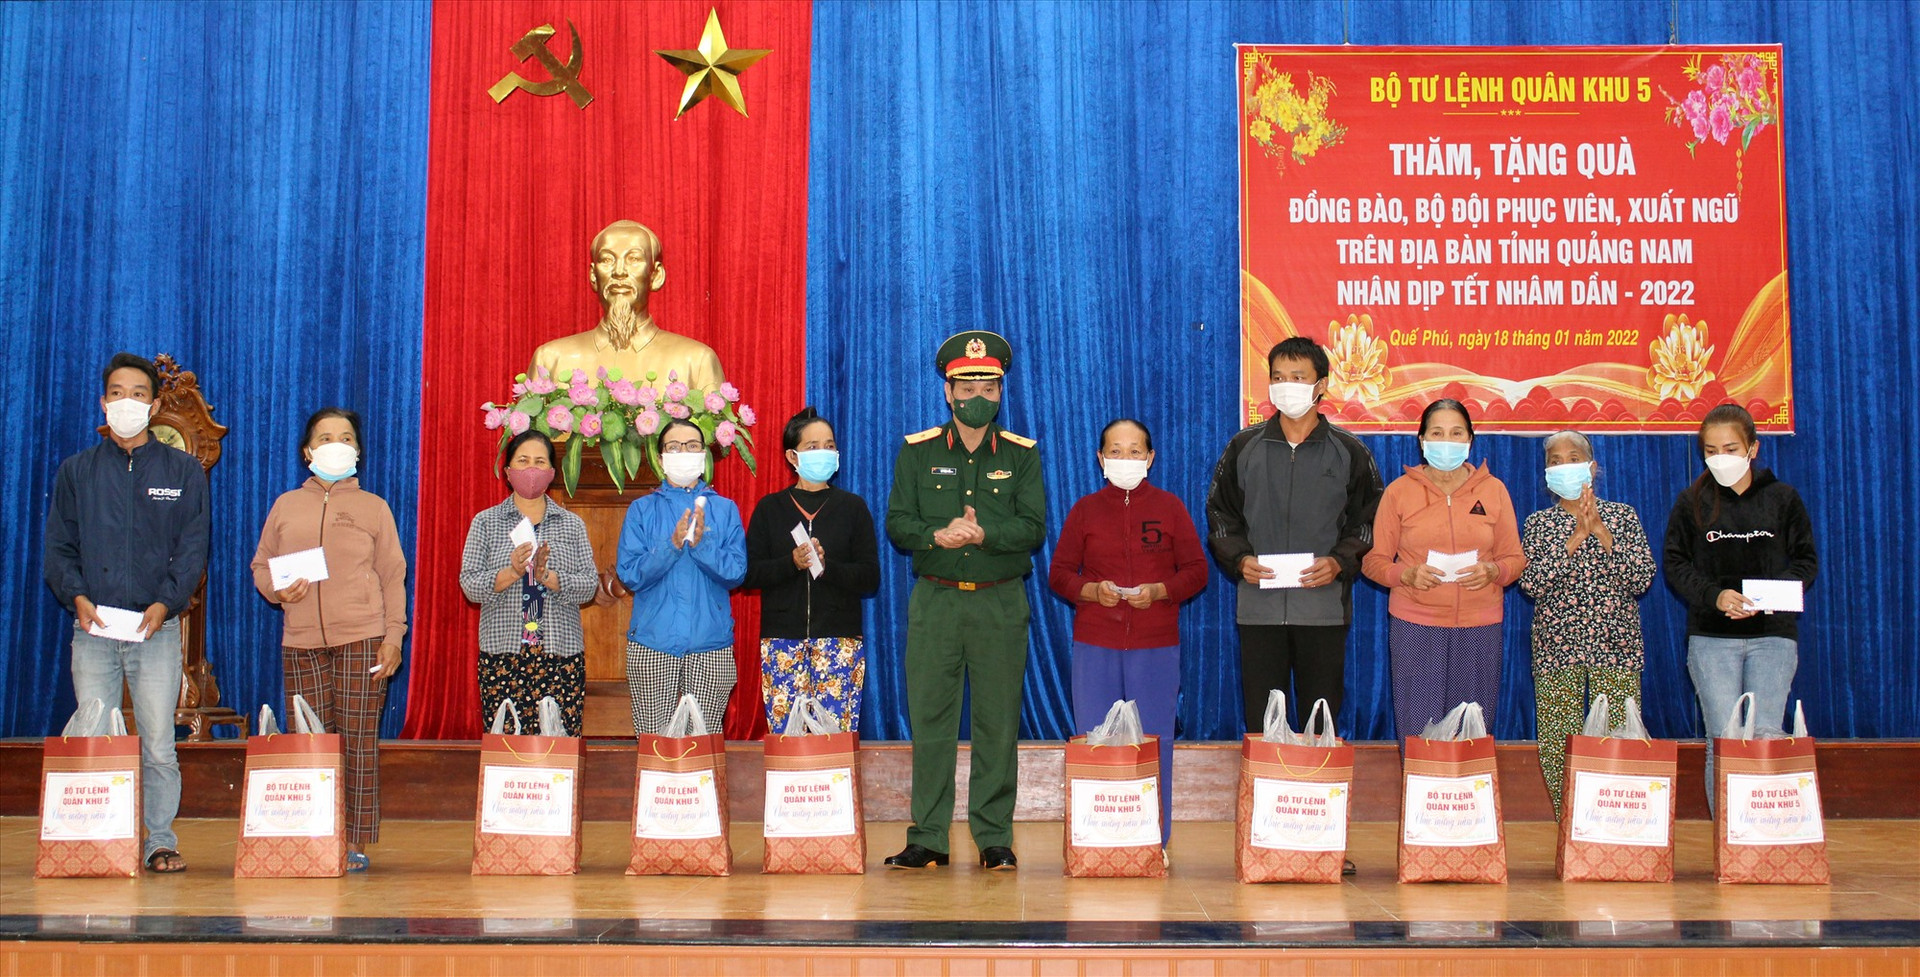 Thiếu tướng Lê Ngọc Hải Tặng quà cho nhân dân.